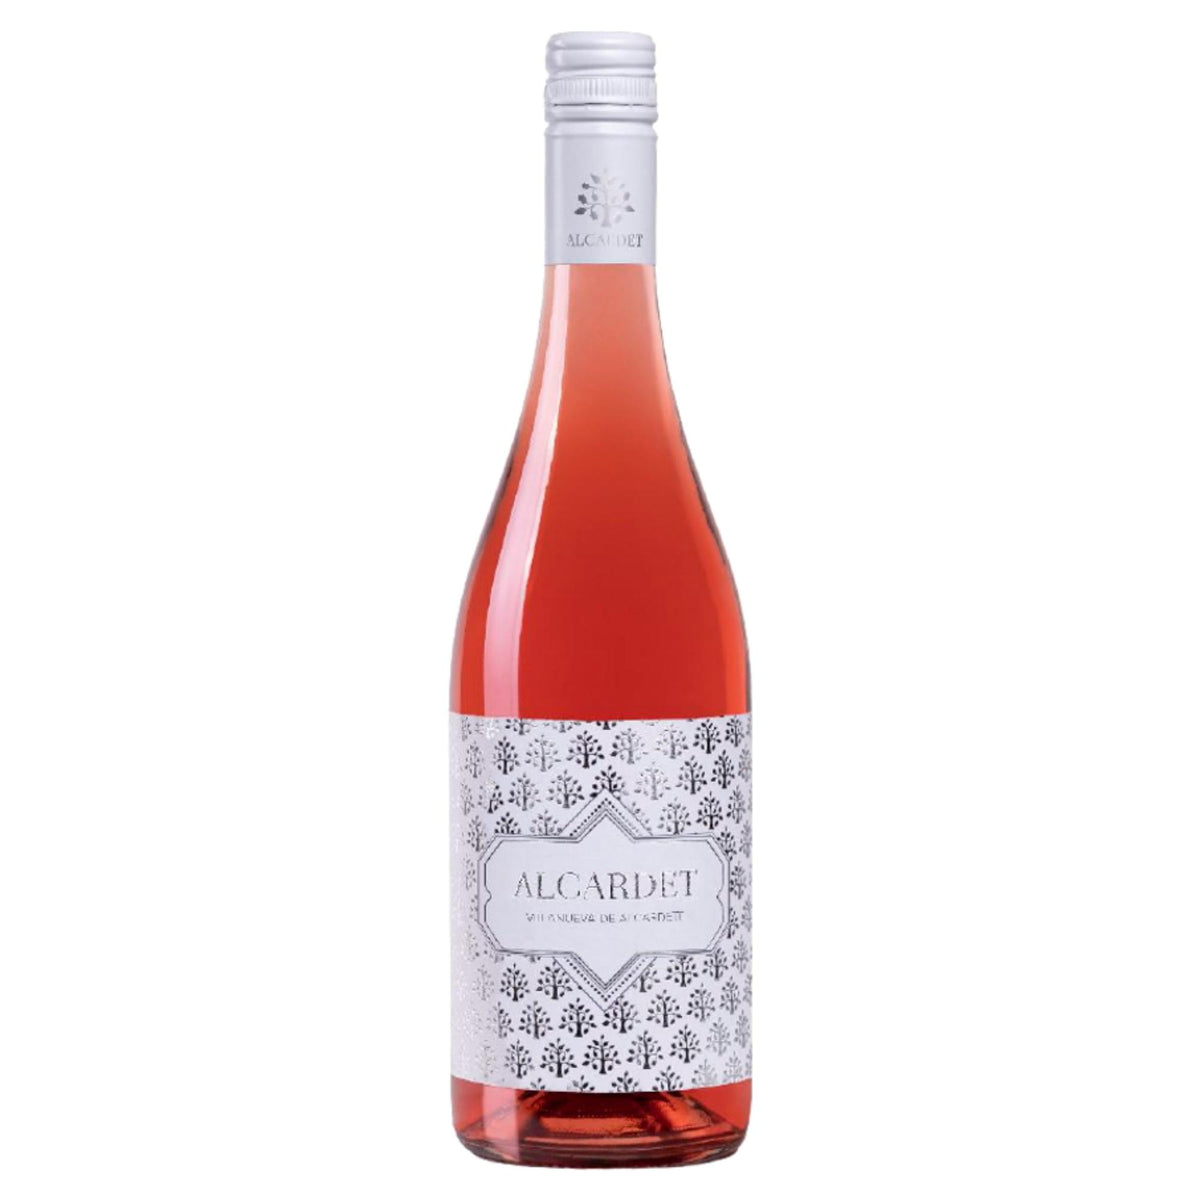 Vegan Rosé Wine Alcardet Garnacha | The Spanish Food Company – The Spanish  Food Company